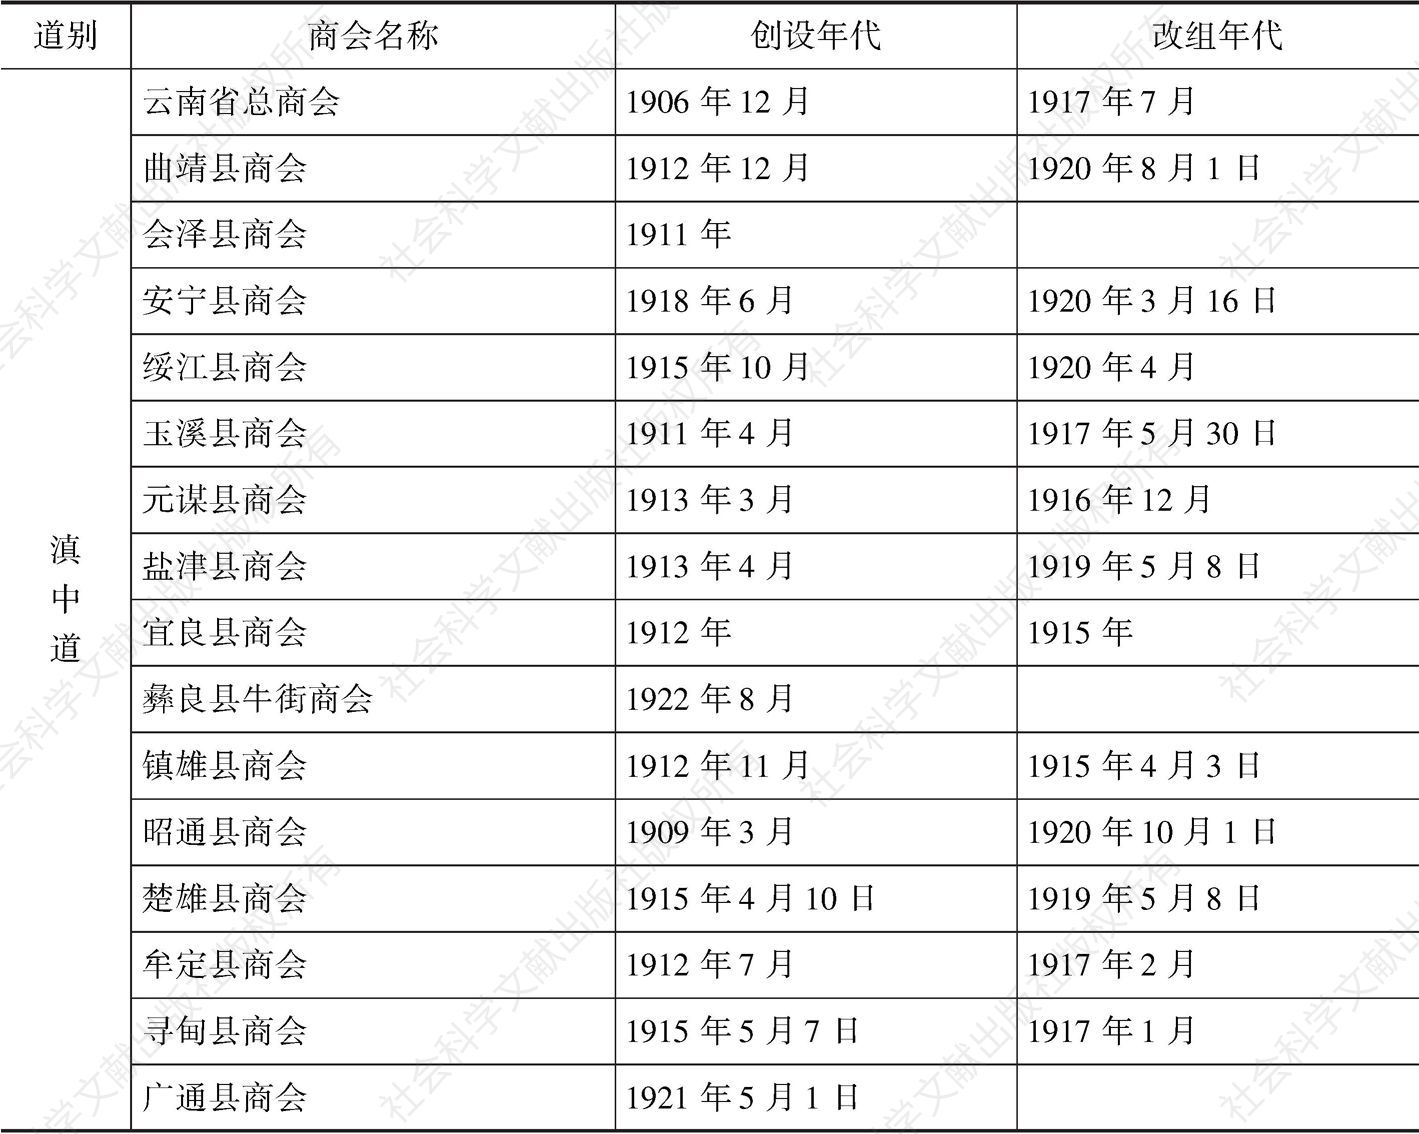 表2-6 1927年日本东亚同文书院统计之“云南各地商会一览表”